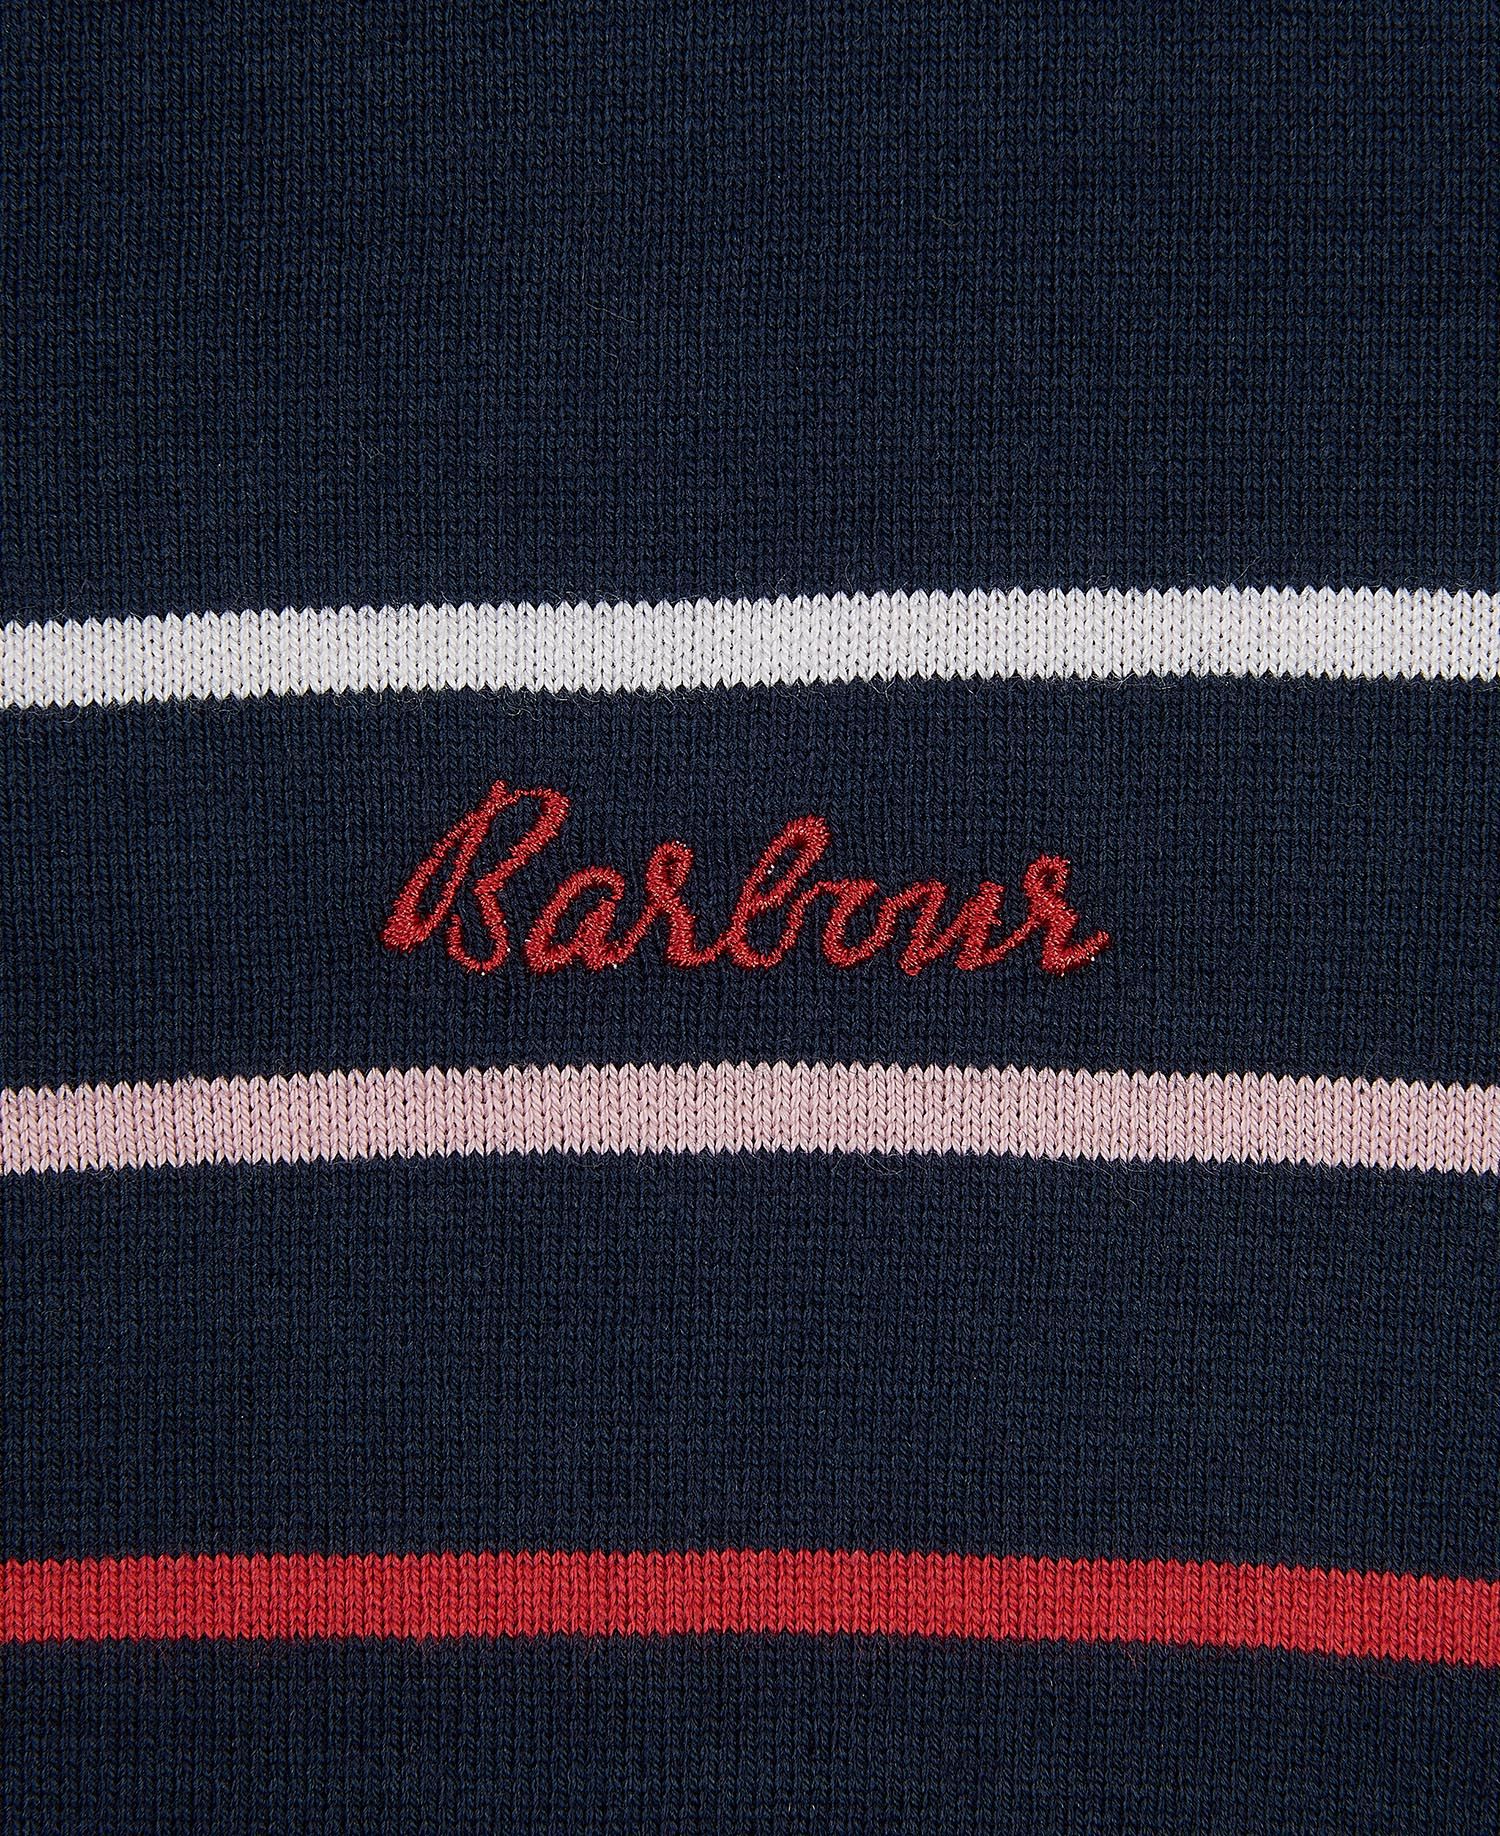 Barbour - Women's Hawkins Stripe Top - Navy